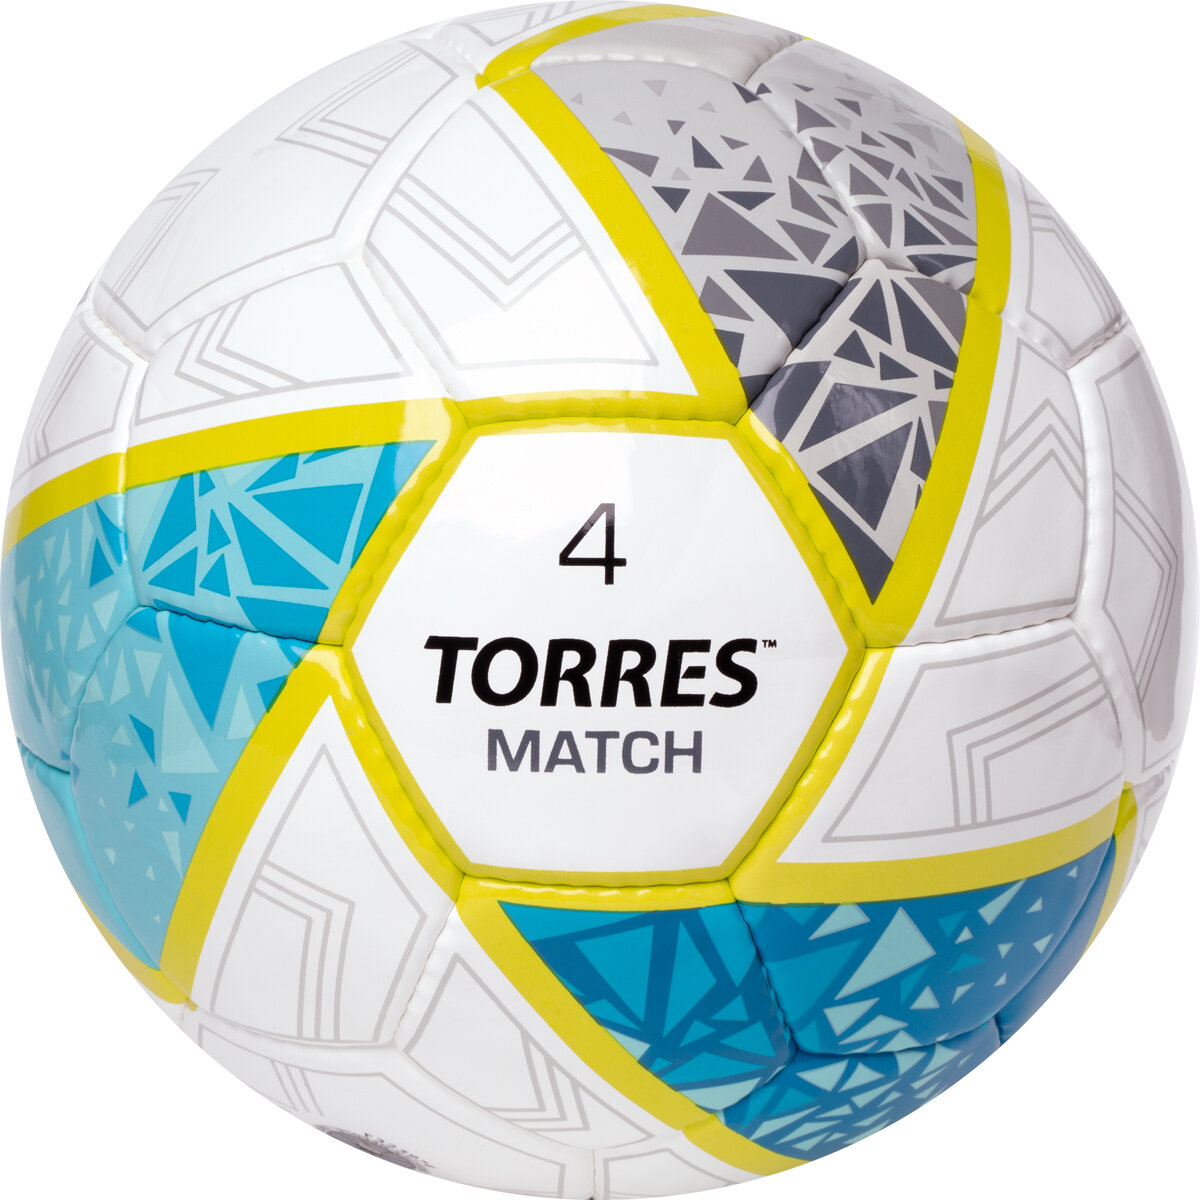 Мяч футбольный TORRES Match NEW, размер 4, поставляется накаченным